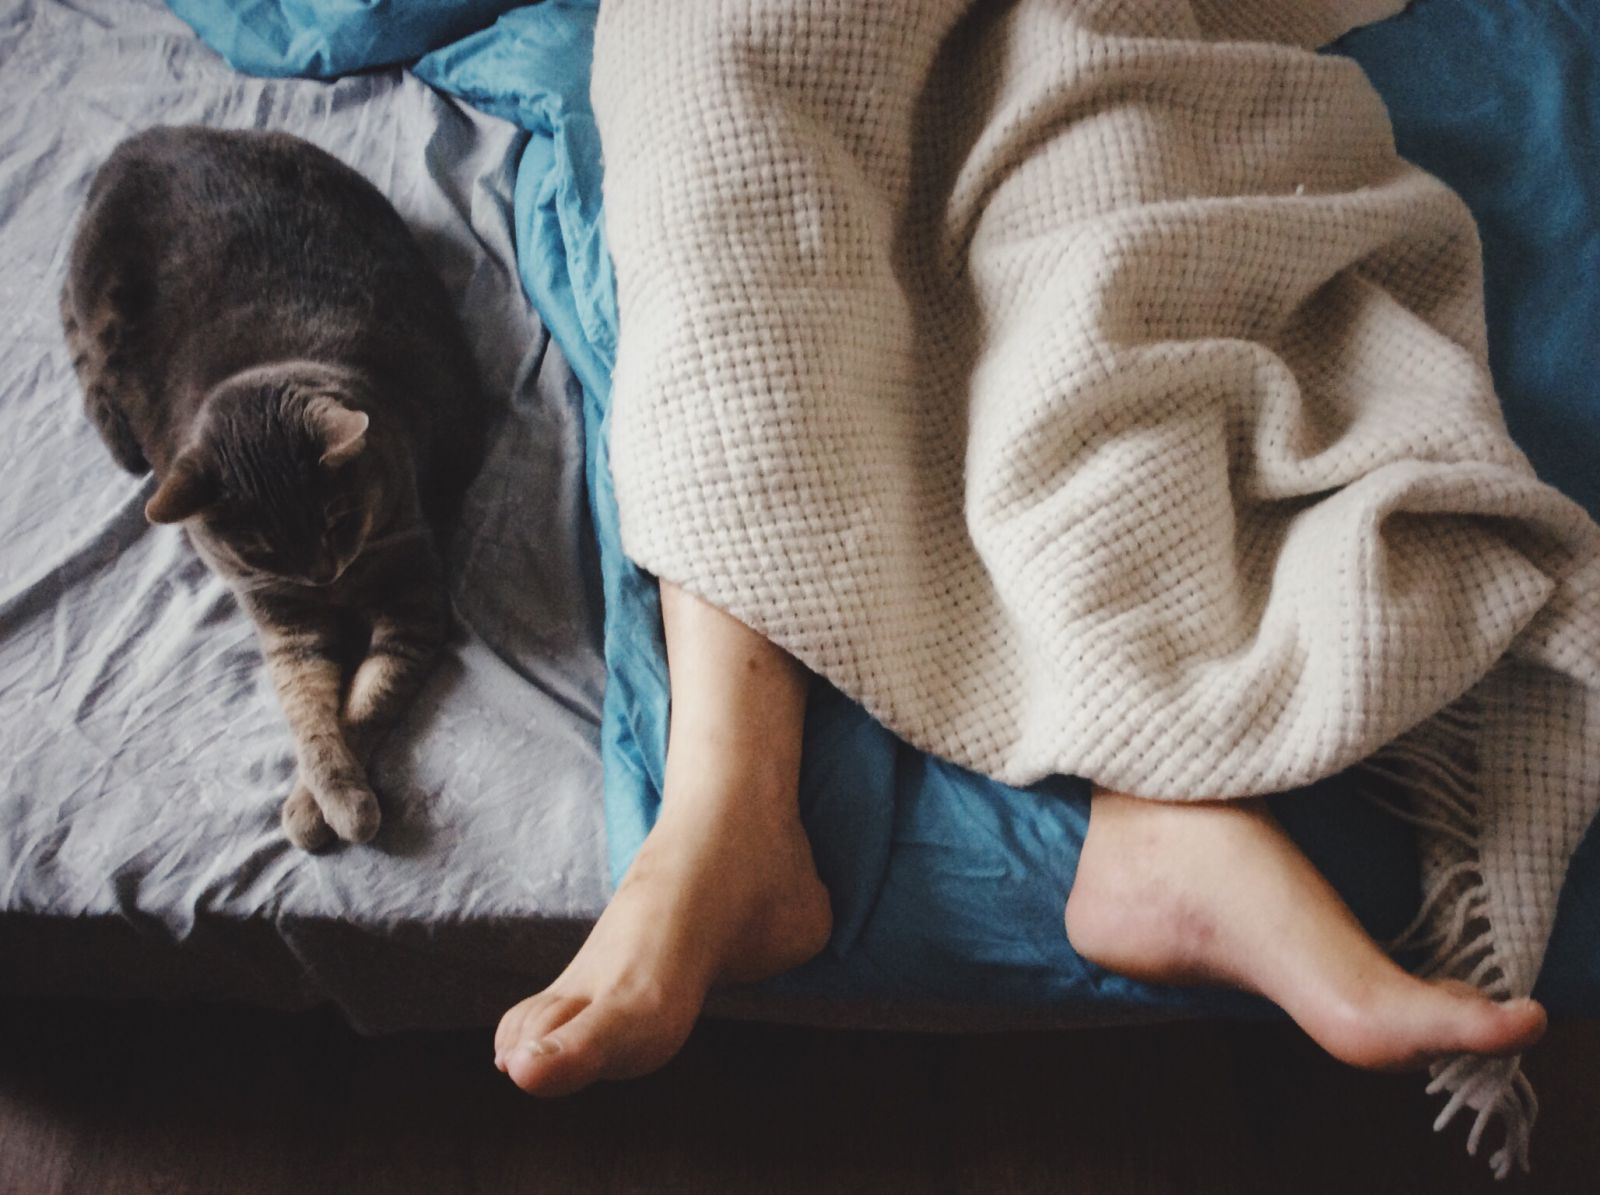 Pessoa deitada na cama com os pés de fora do cobertor com um gato ao seu lado